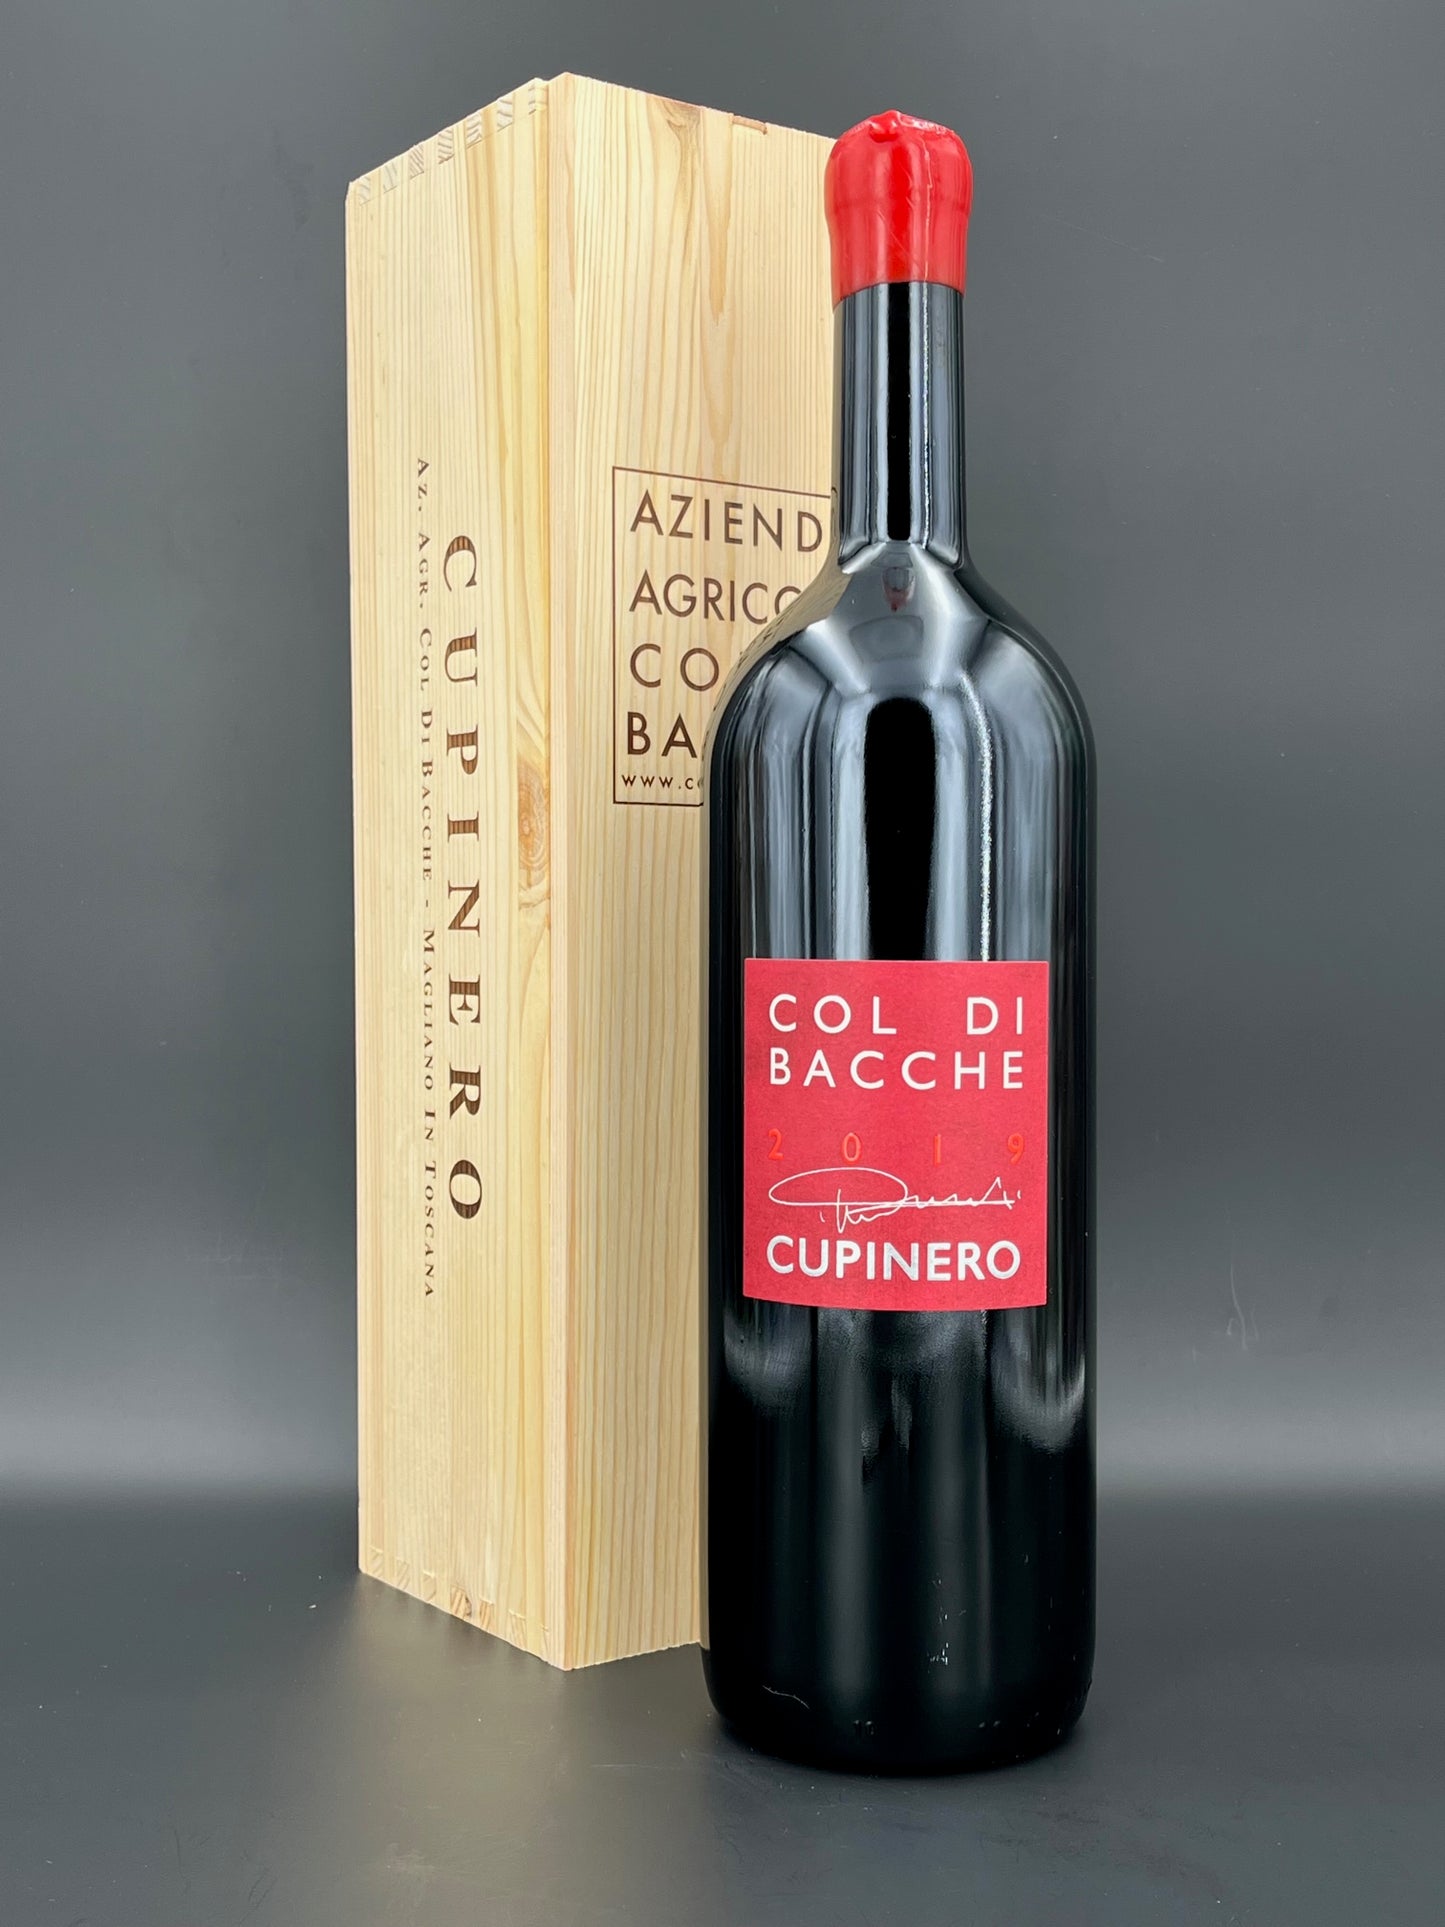 "Cupinero" I.G.T. Toscana Rosso Magnum in OHK | Col di Bacche